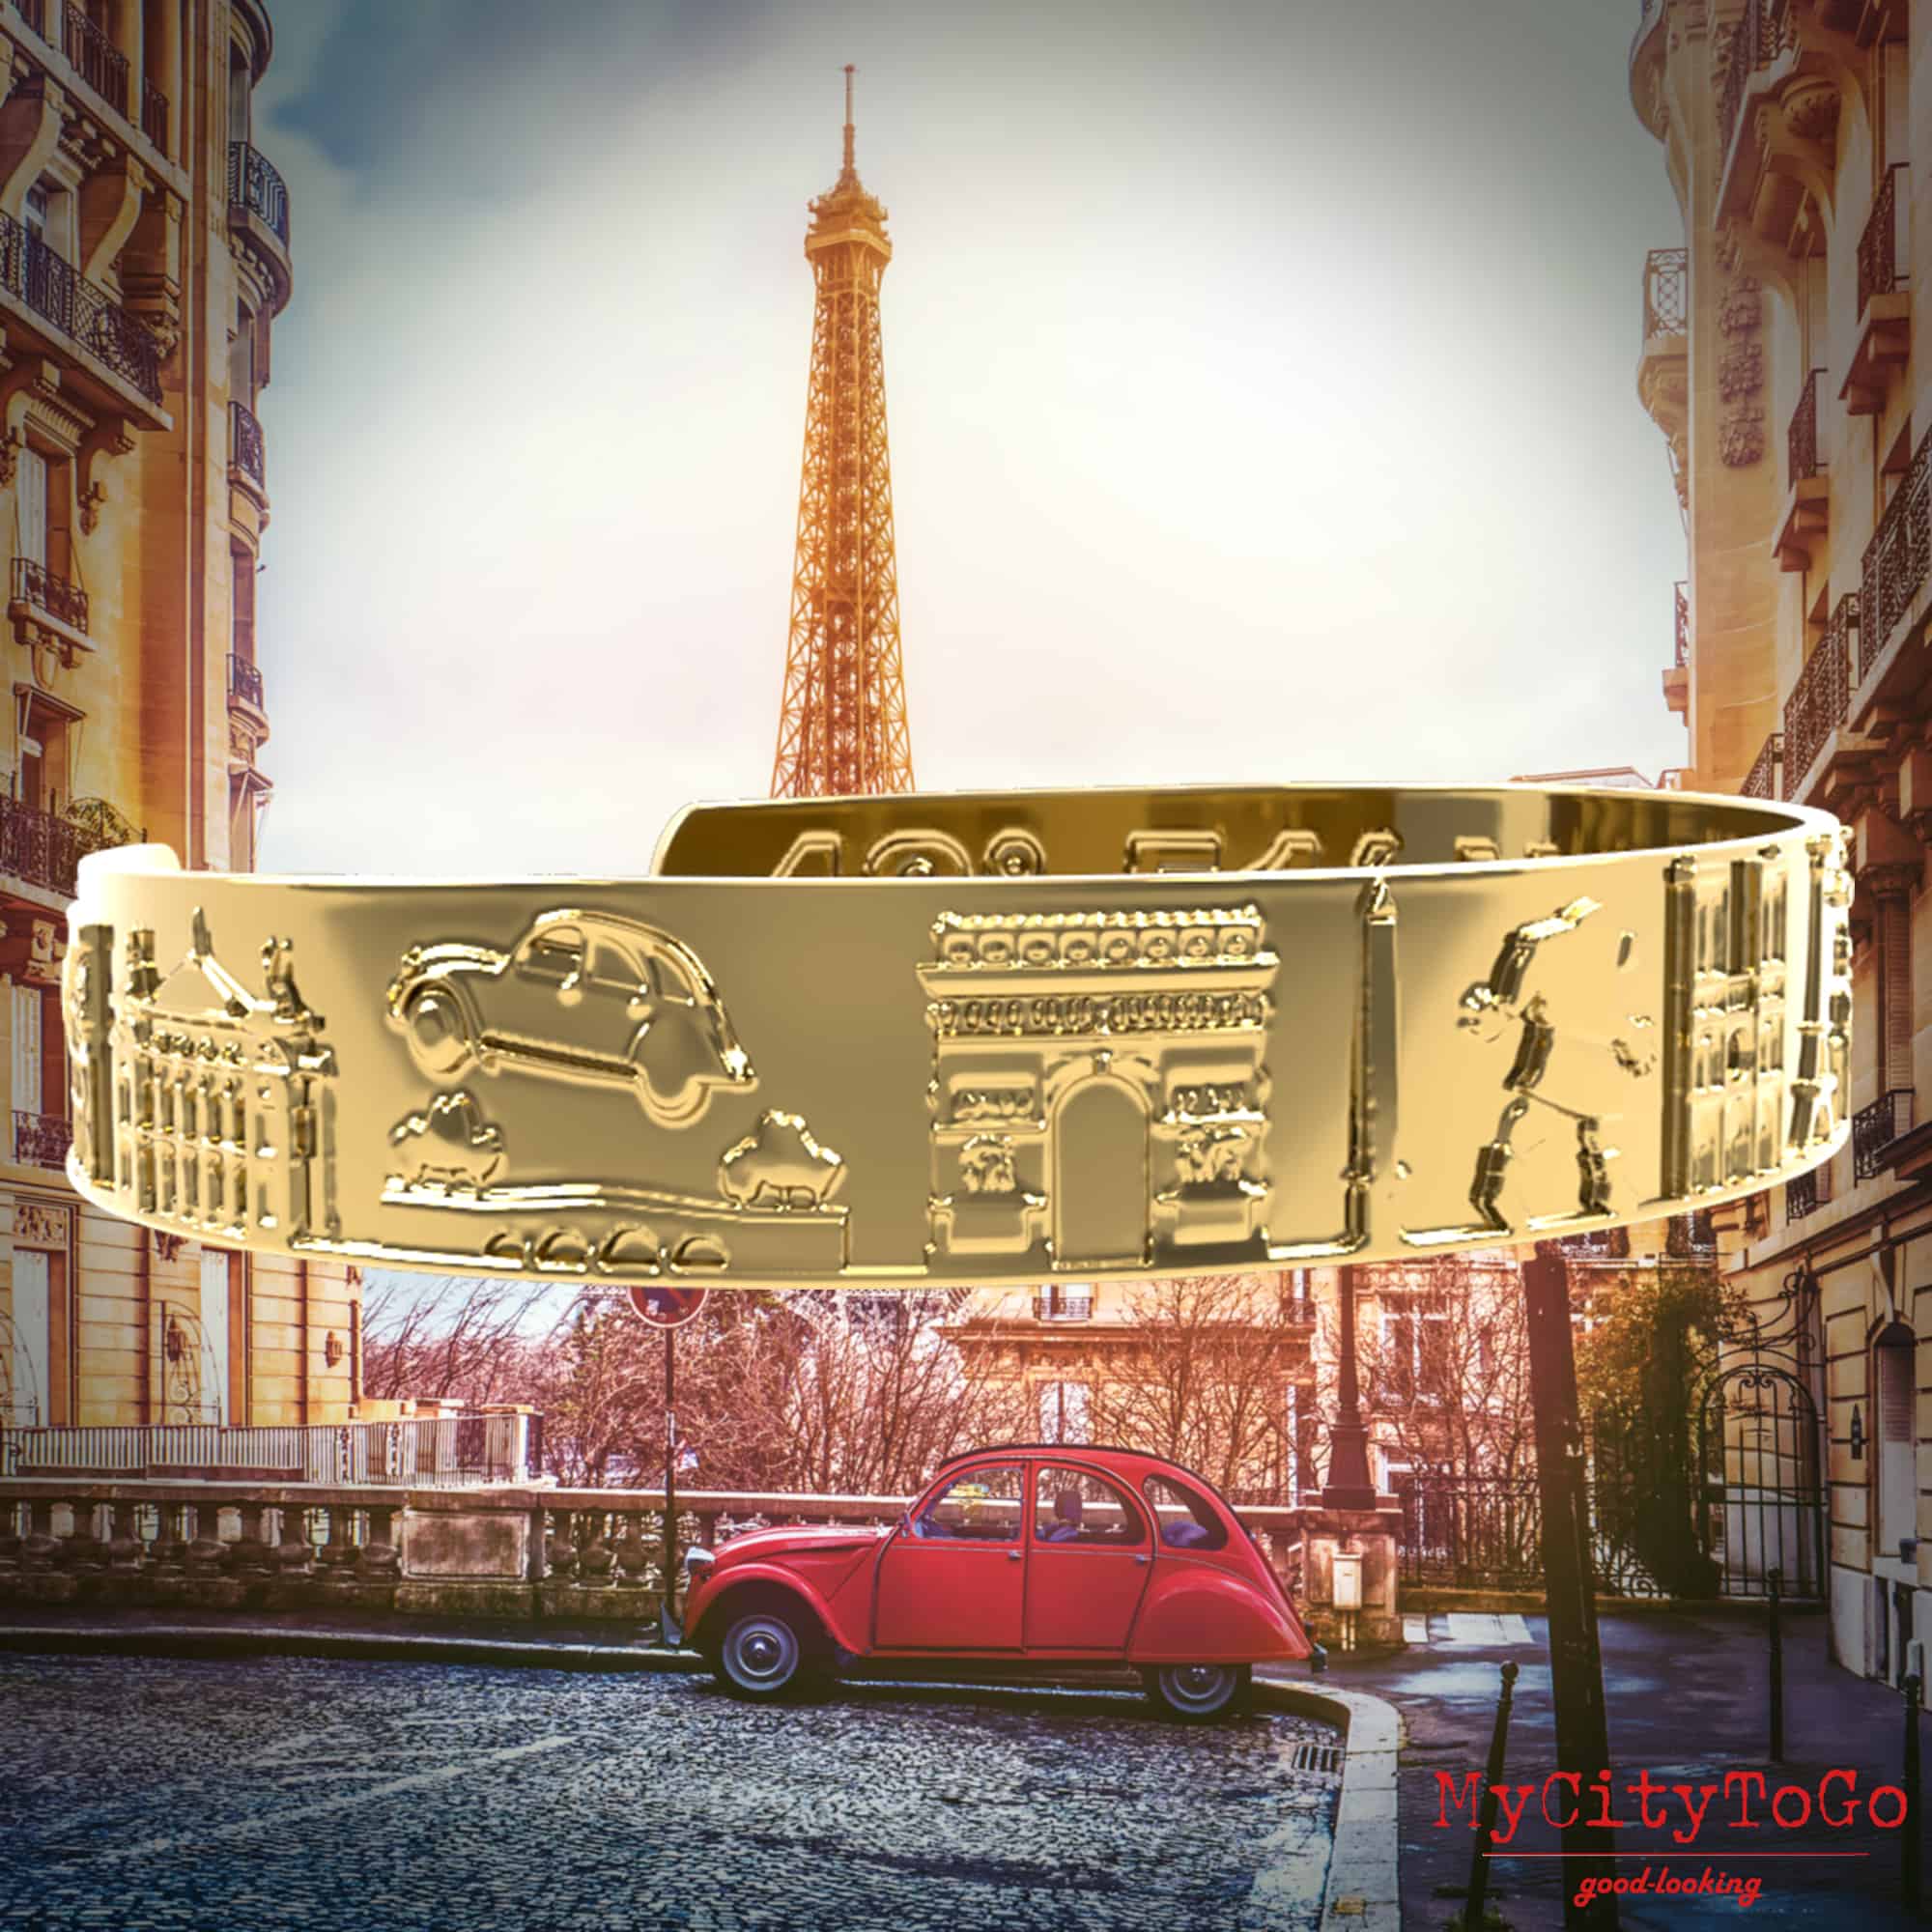 Goldfarbener Armreif mit Reliefs bekannter Motive der Stadt Paris